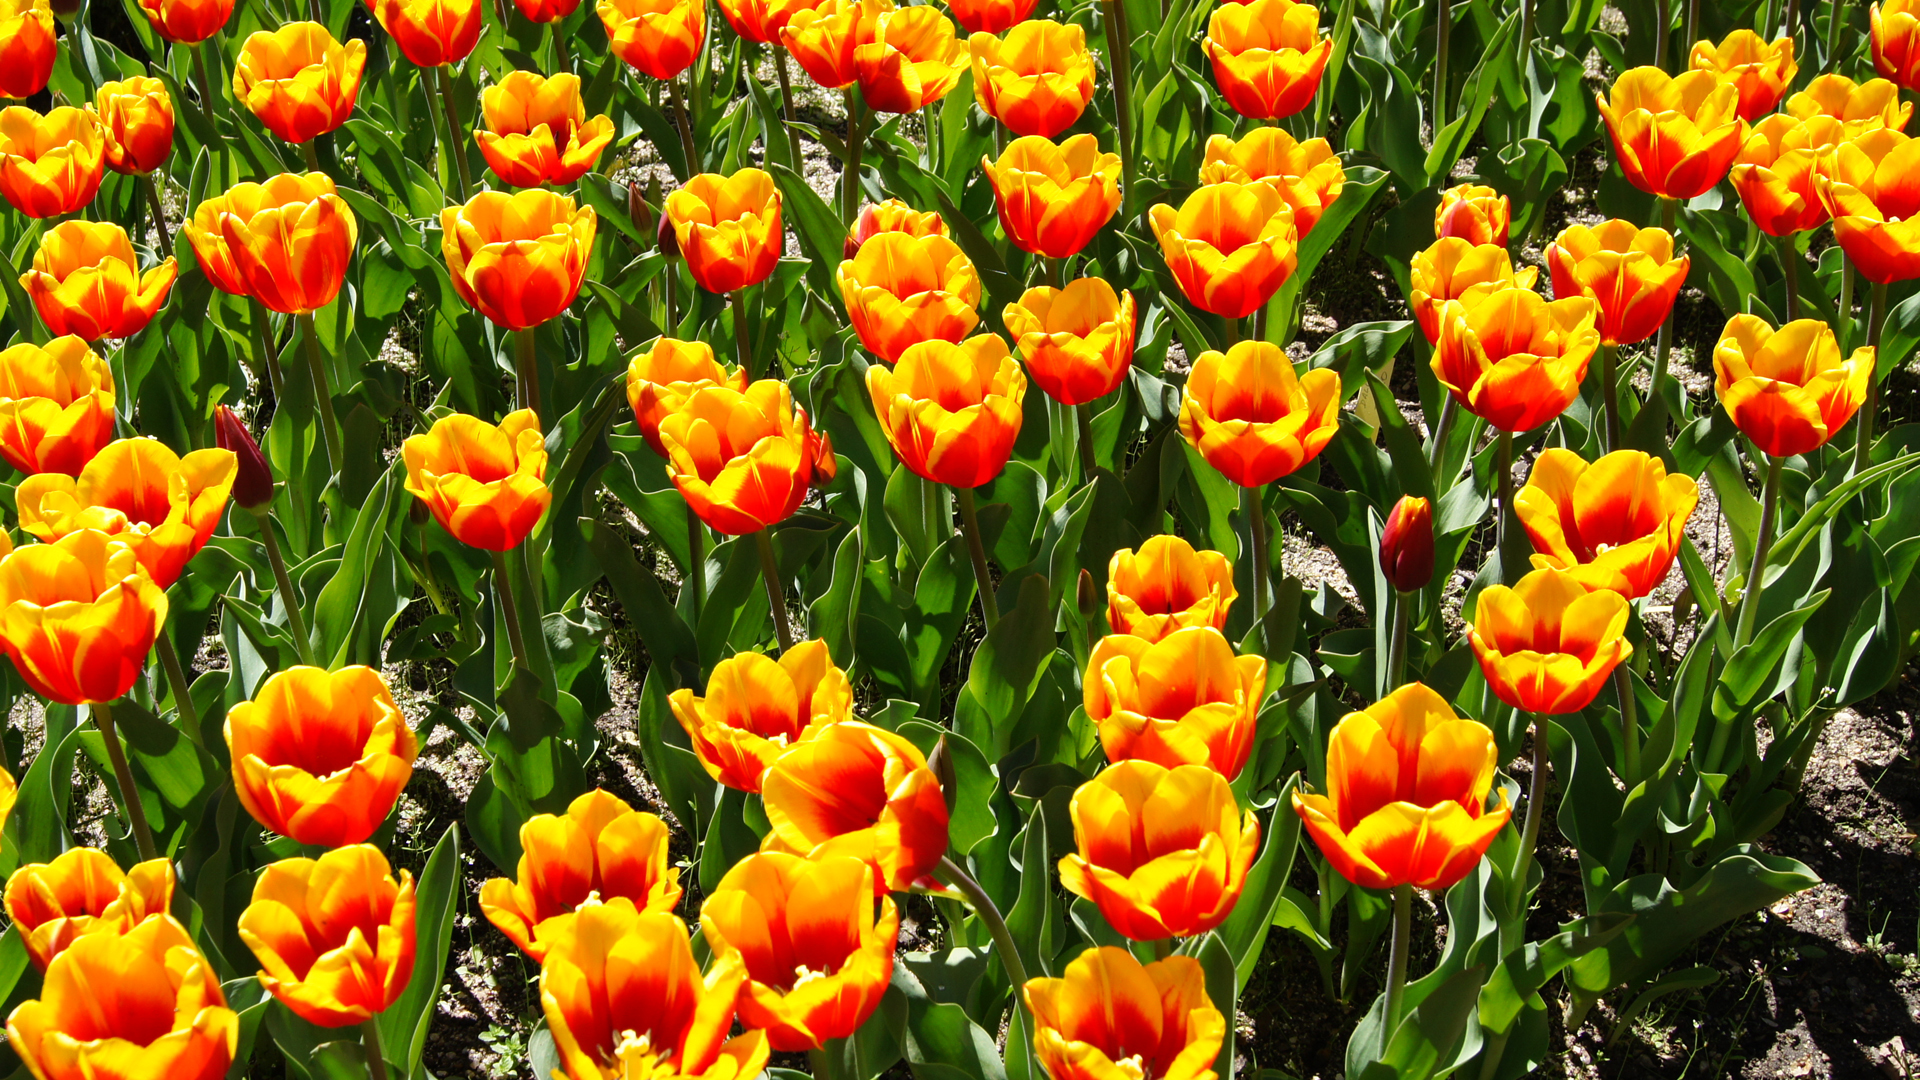 Fotostrecke Frühling Abbildung 06: Tulpen in Madrid